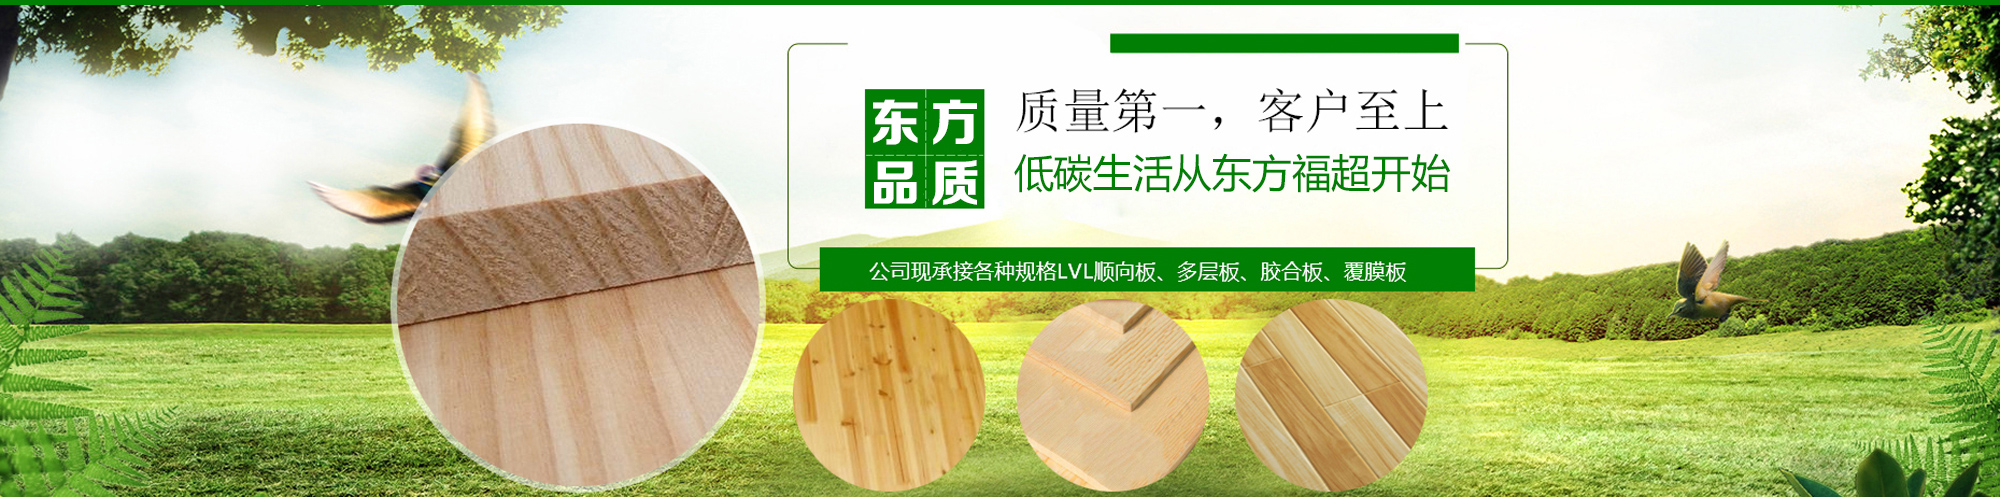 东方福超木业